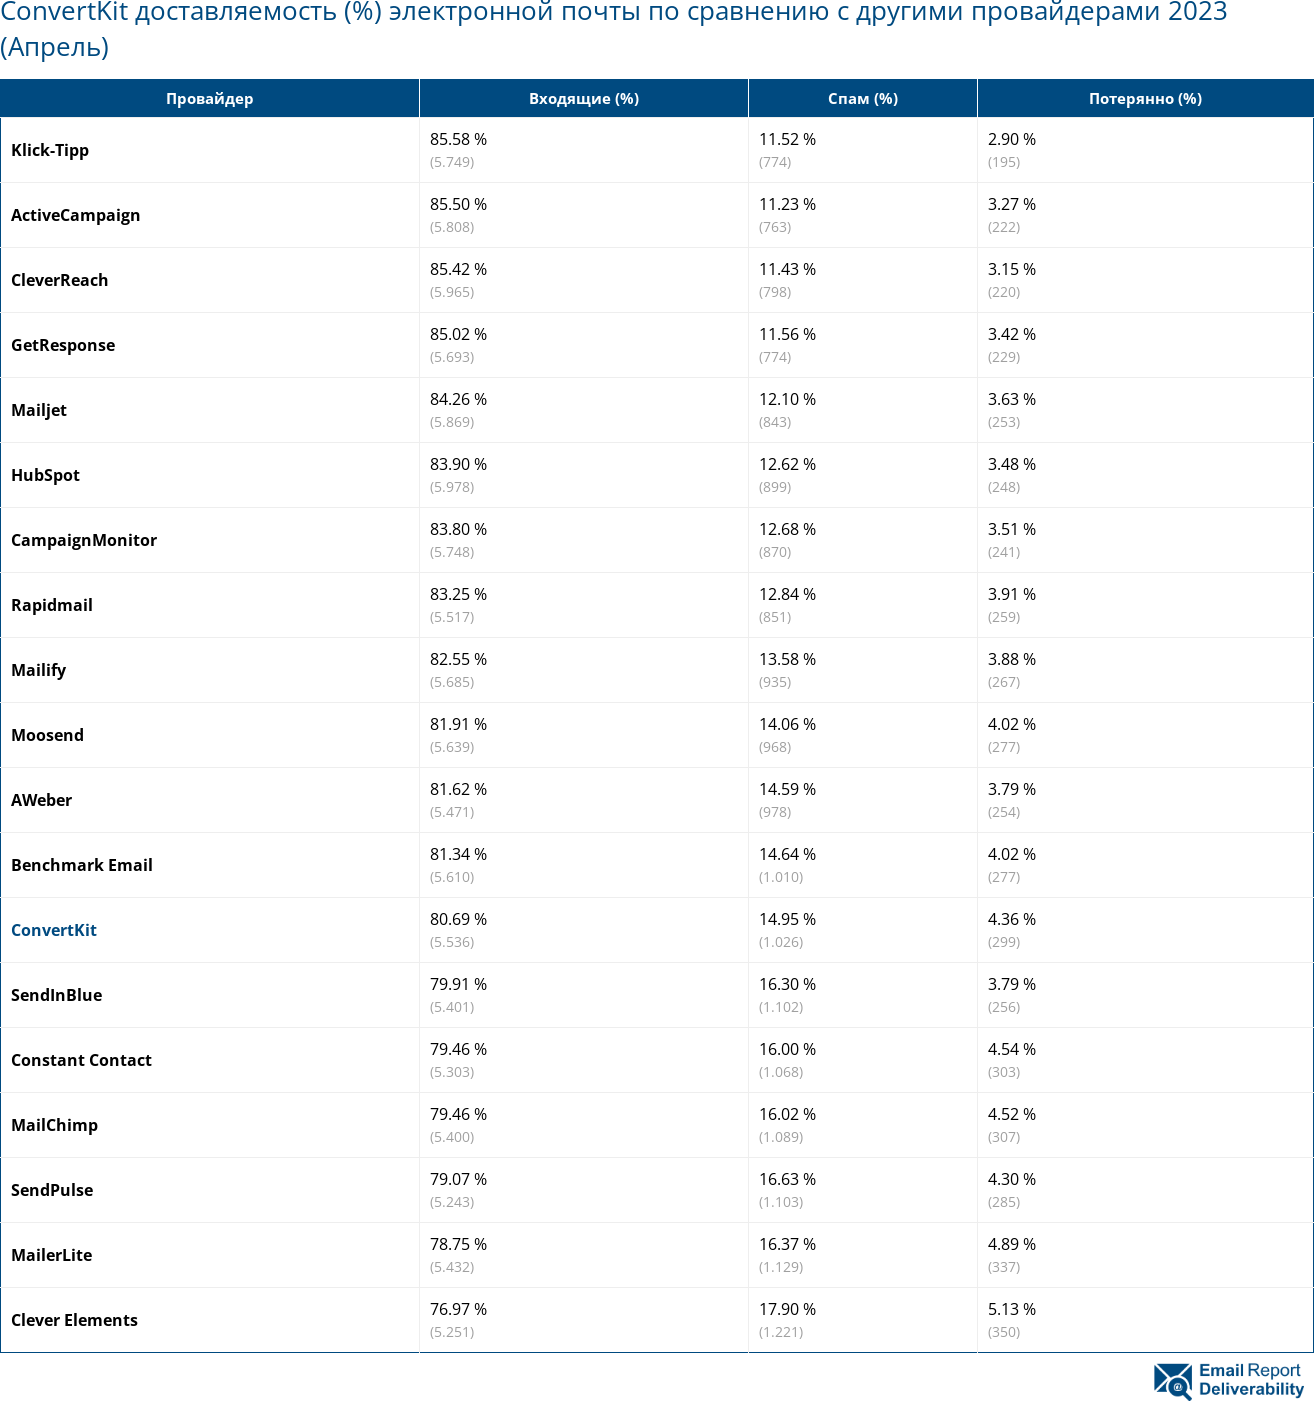 ConvertKit доставляемость (%) электронной почты по сравнению с другими провайдерами 2023 (Апрель)